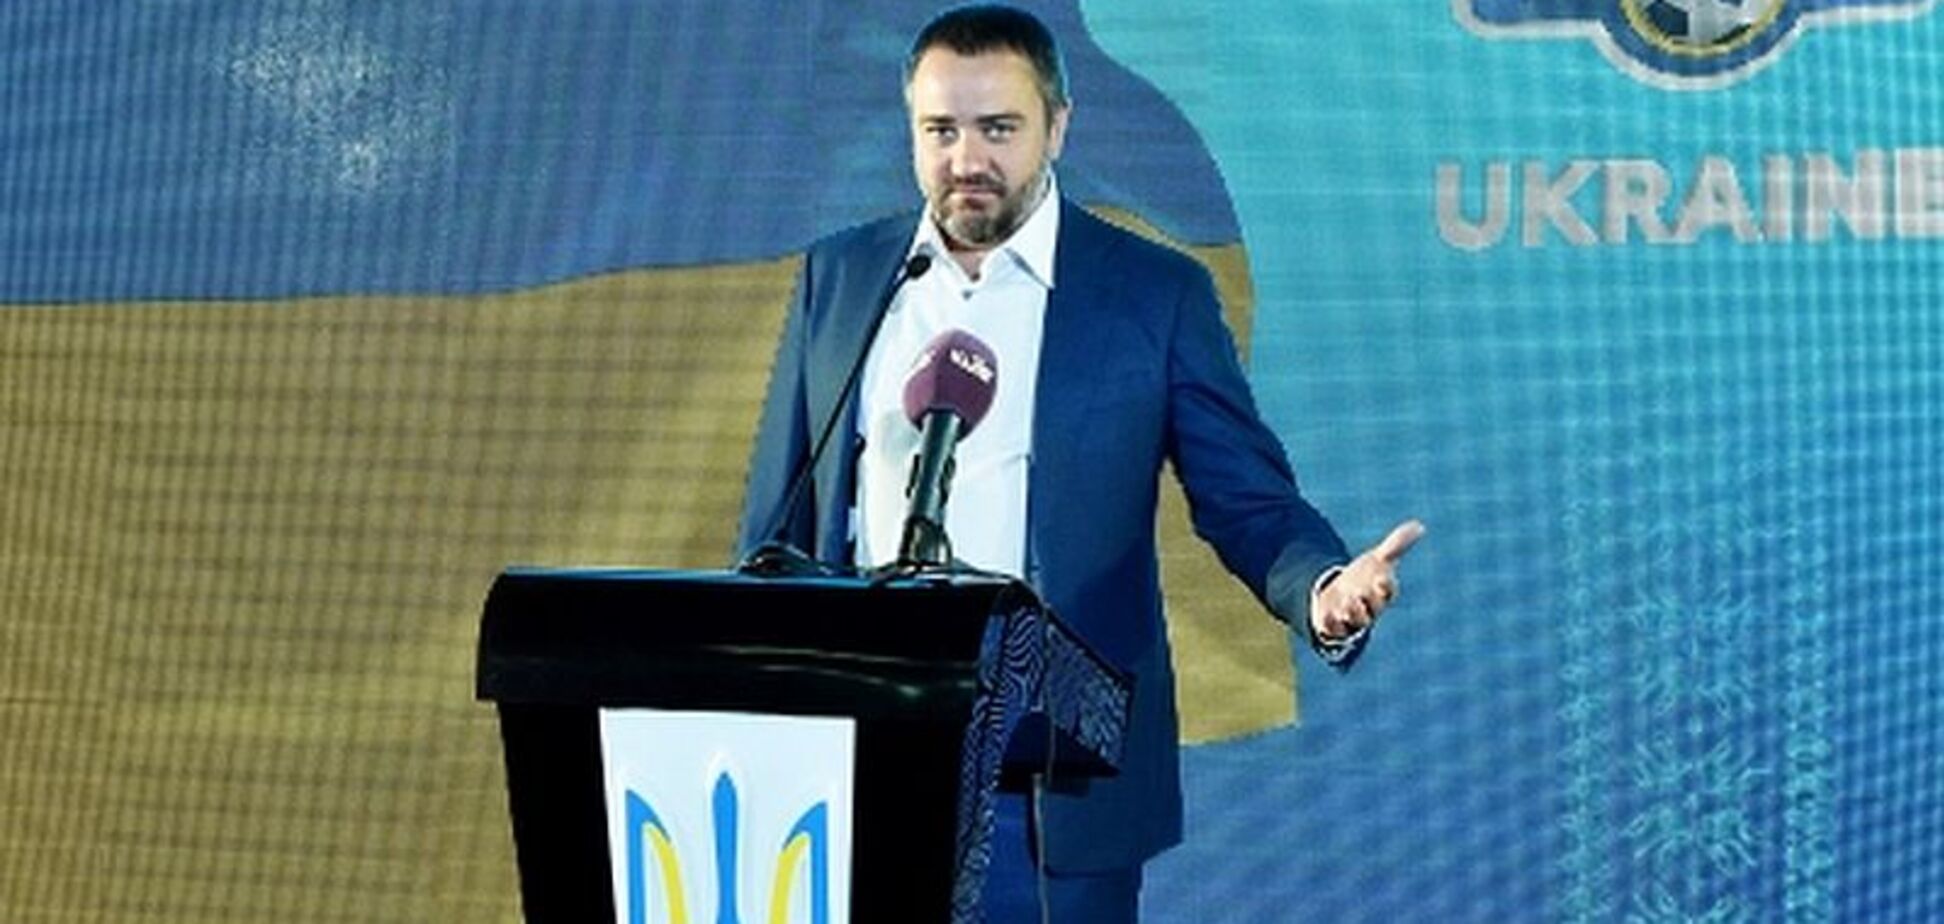 'Ни в коем случае': президент Федерации футбола Украины объявил бойкот ЧМ-2018 в России